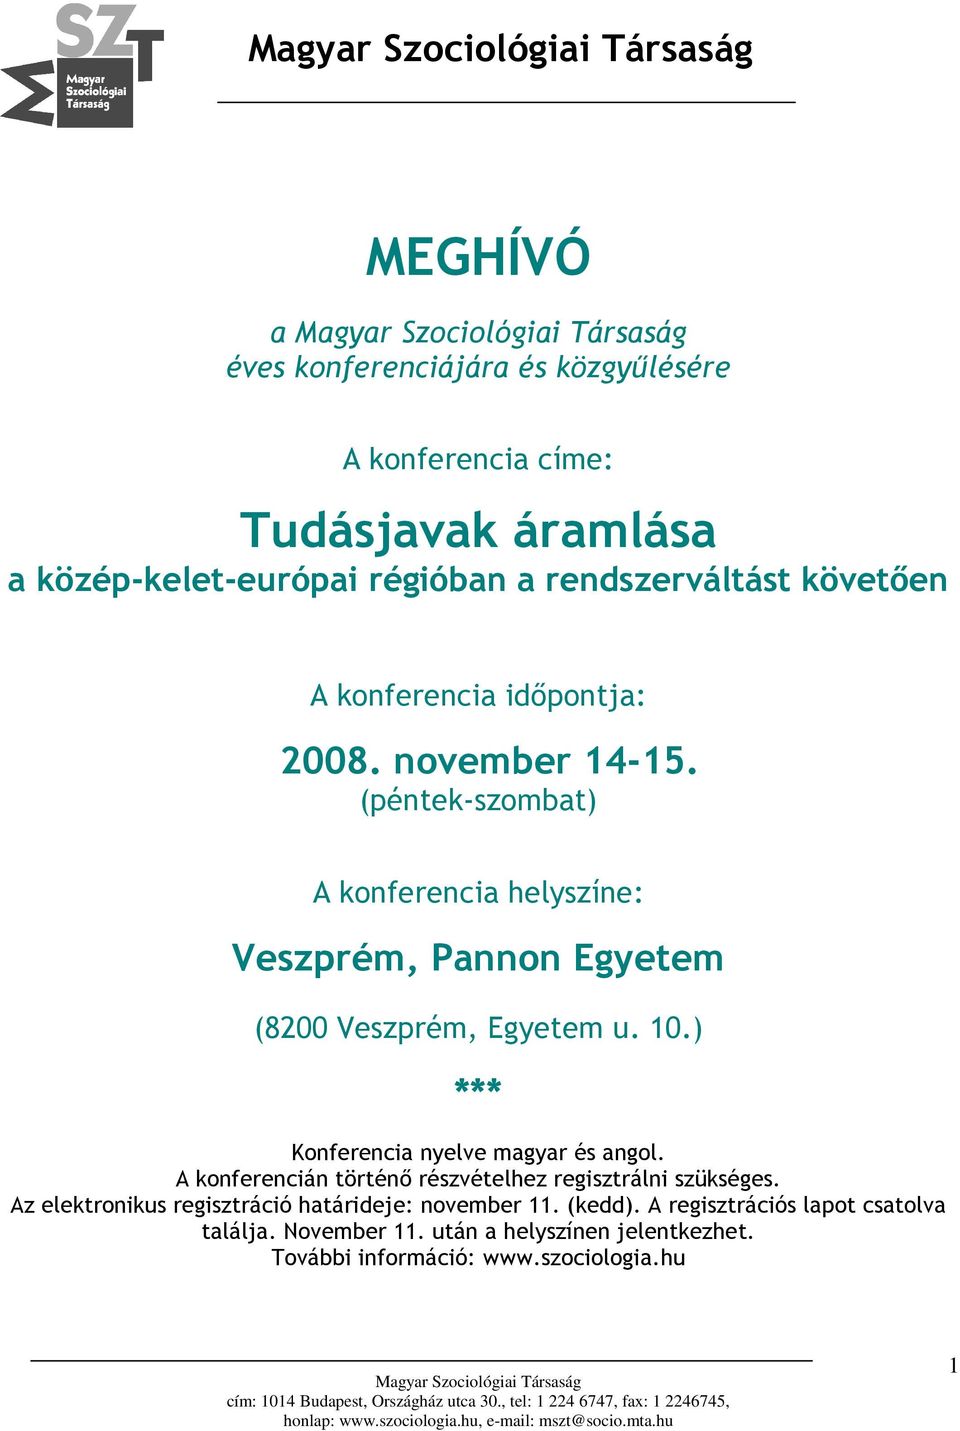 ) *** Konferencia nyelve magyar és angol. A konferencián történő részvételhez regisztrálni szükséges.